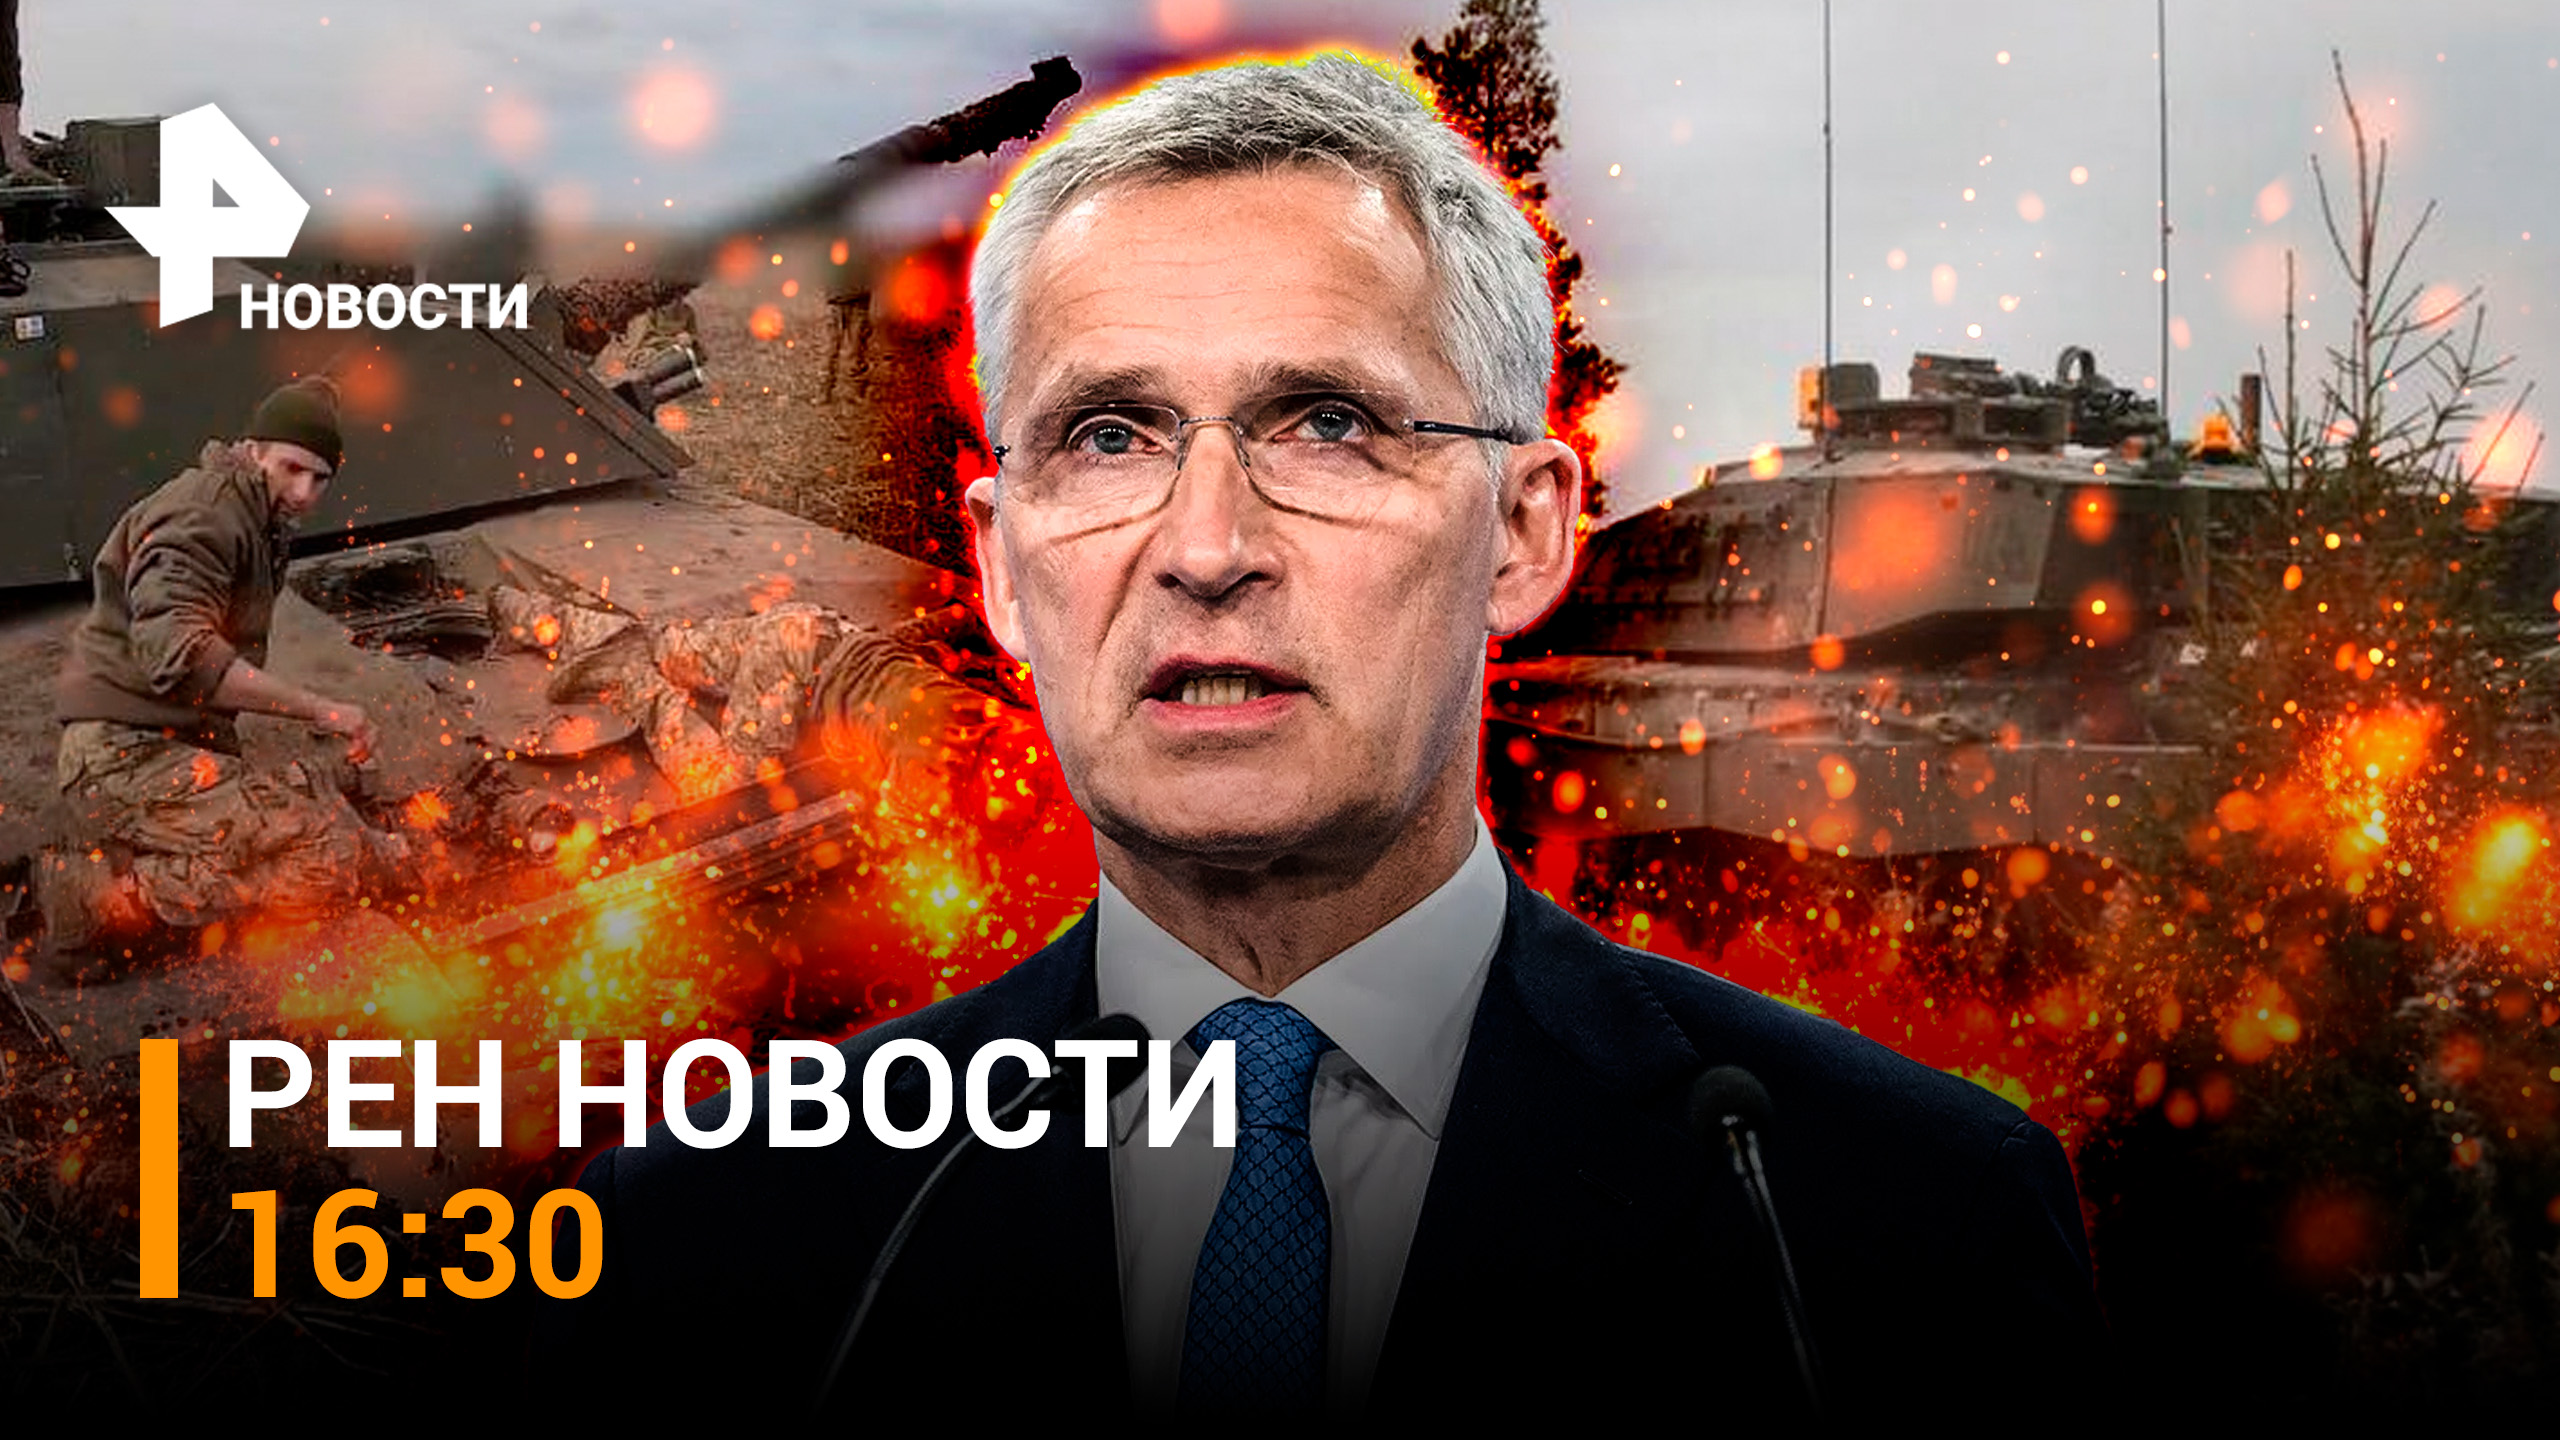 Четвертый Abrams уничтожен в ходе СВО / Будет ли поход НАТО на Украину? / РЕН Новости 11.03, 16:30